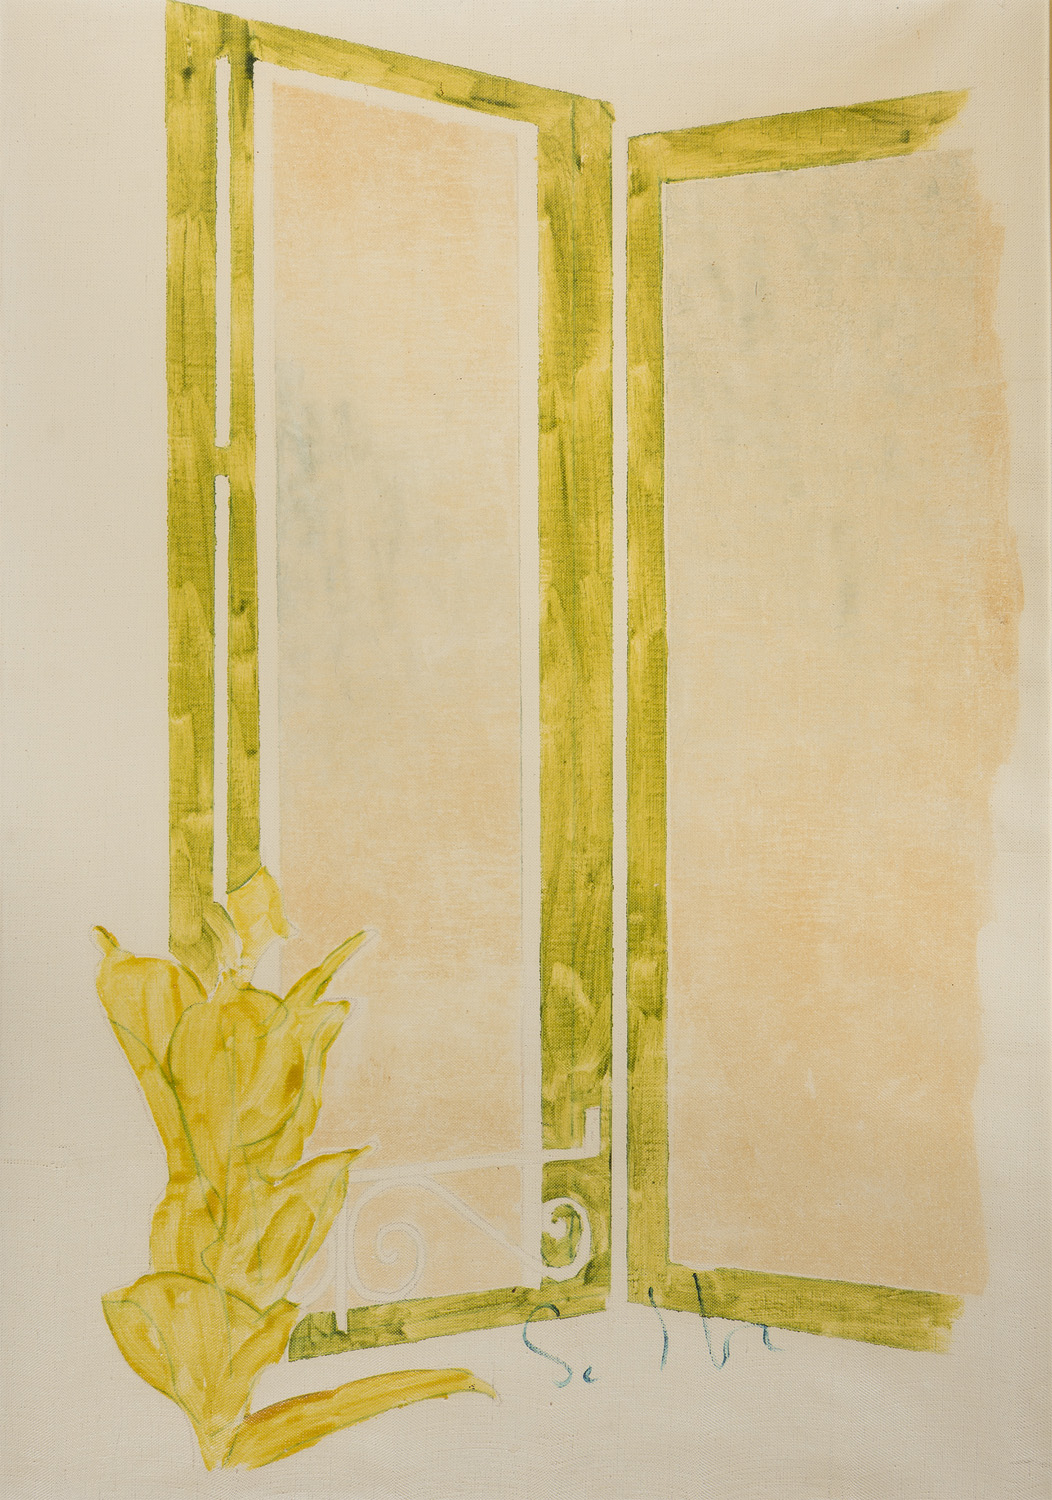 MARIO SCHIFANO (Homs 1934 - Roma 1998) Finestra, 1977 ca. Smalti su tela, cm. 100 x 70 Firma in